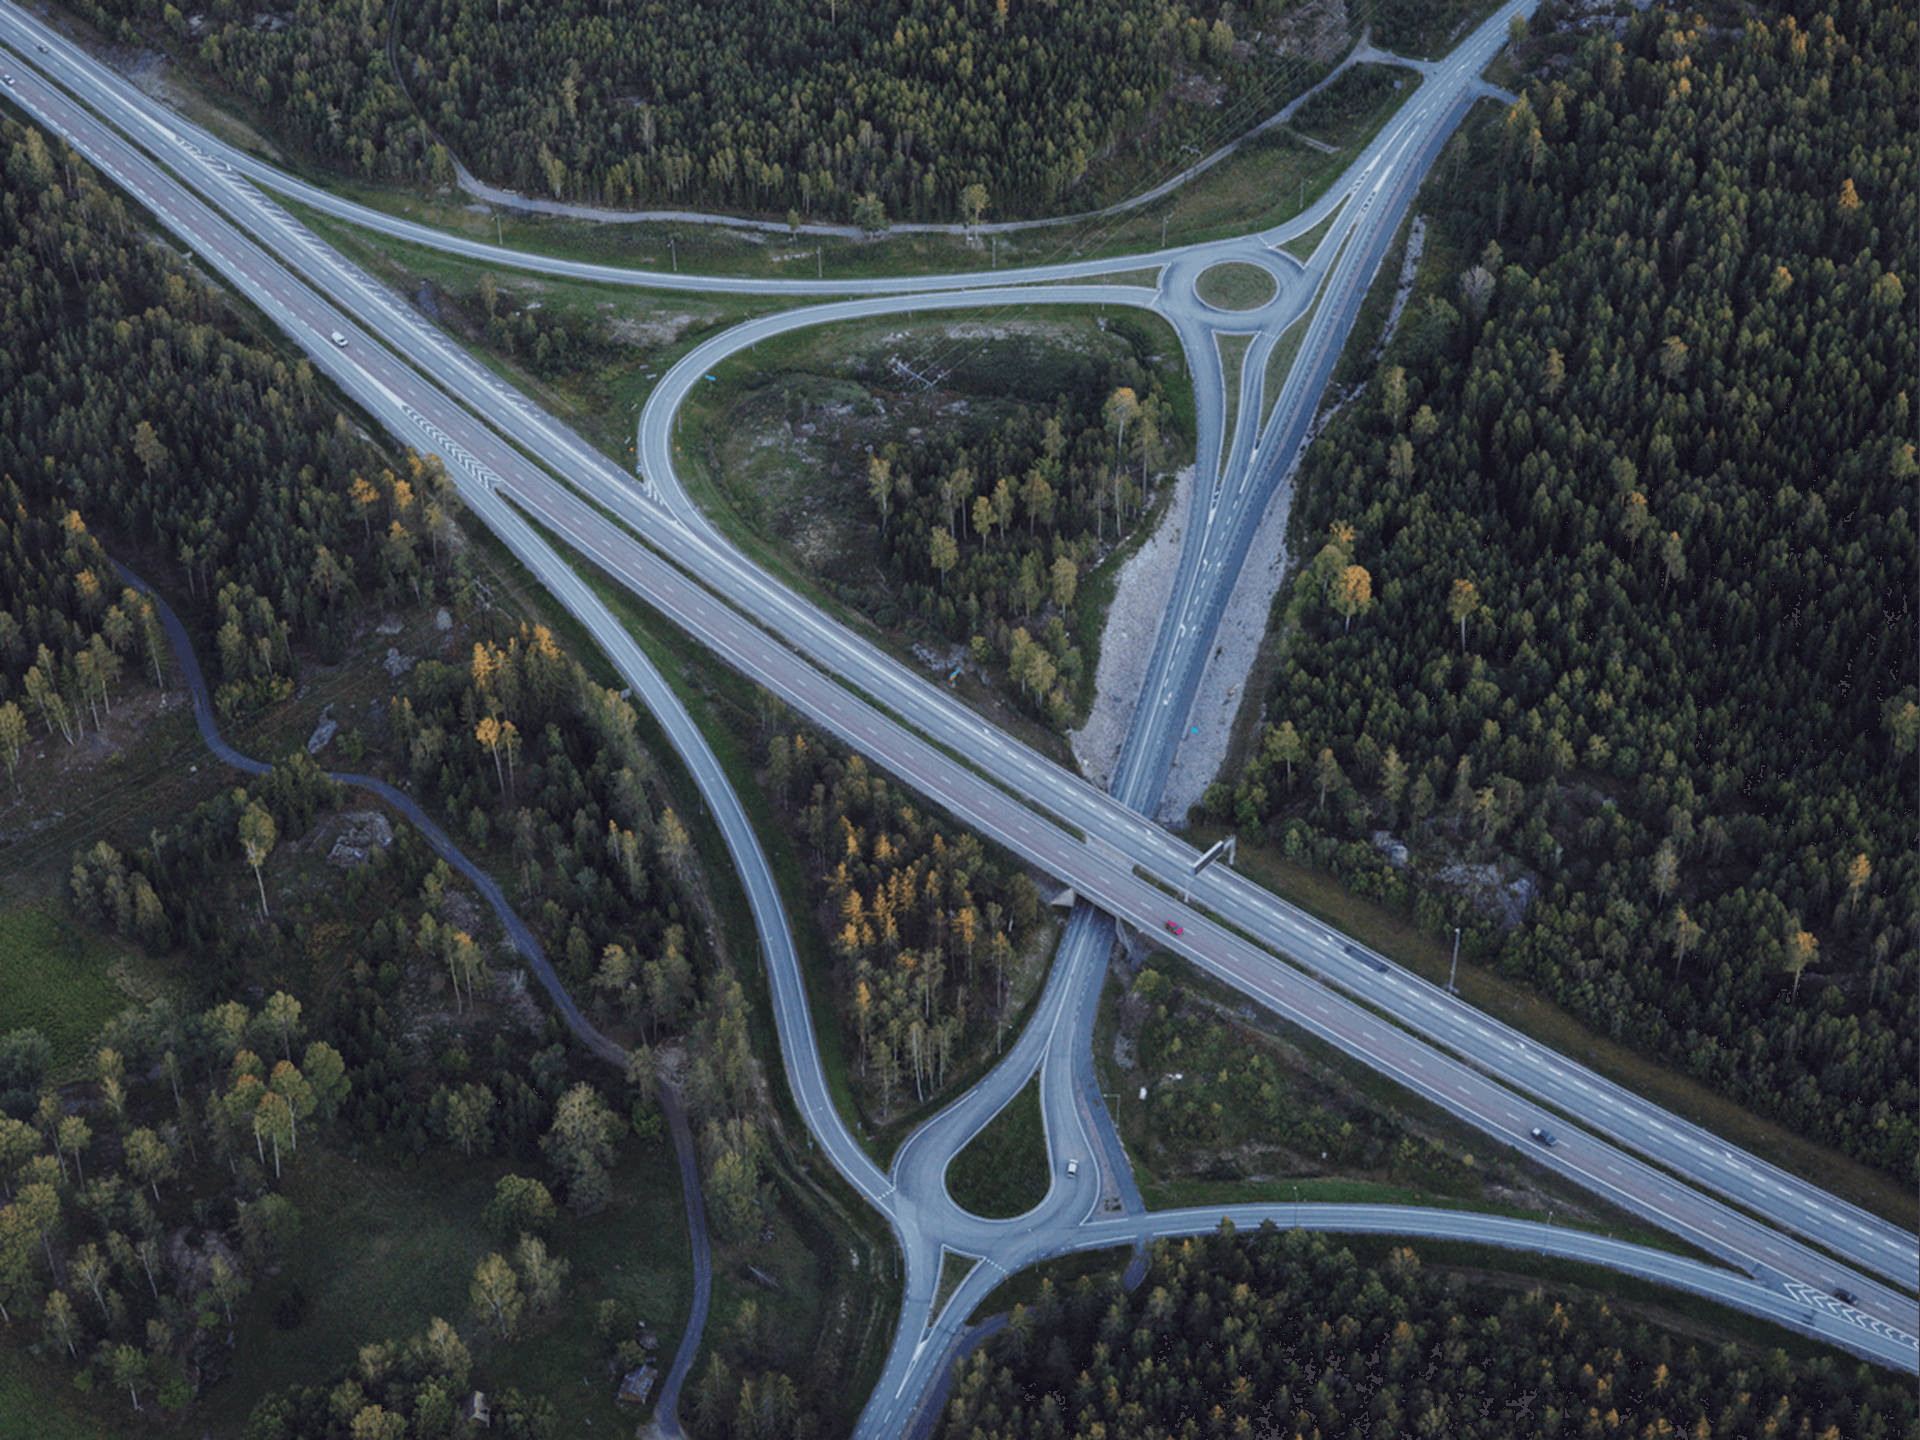 Luchtfoto van samenkomende wegen tussen de bomen